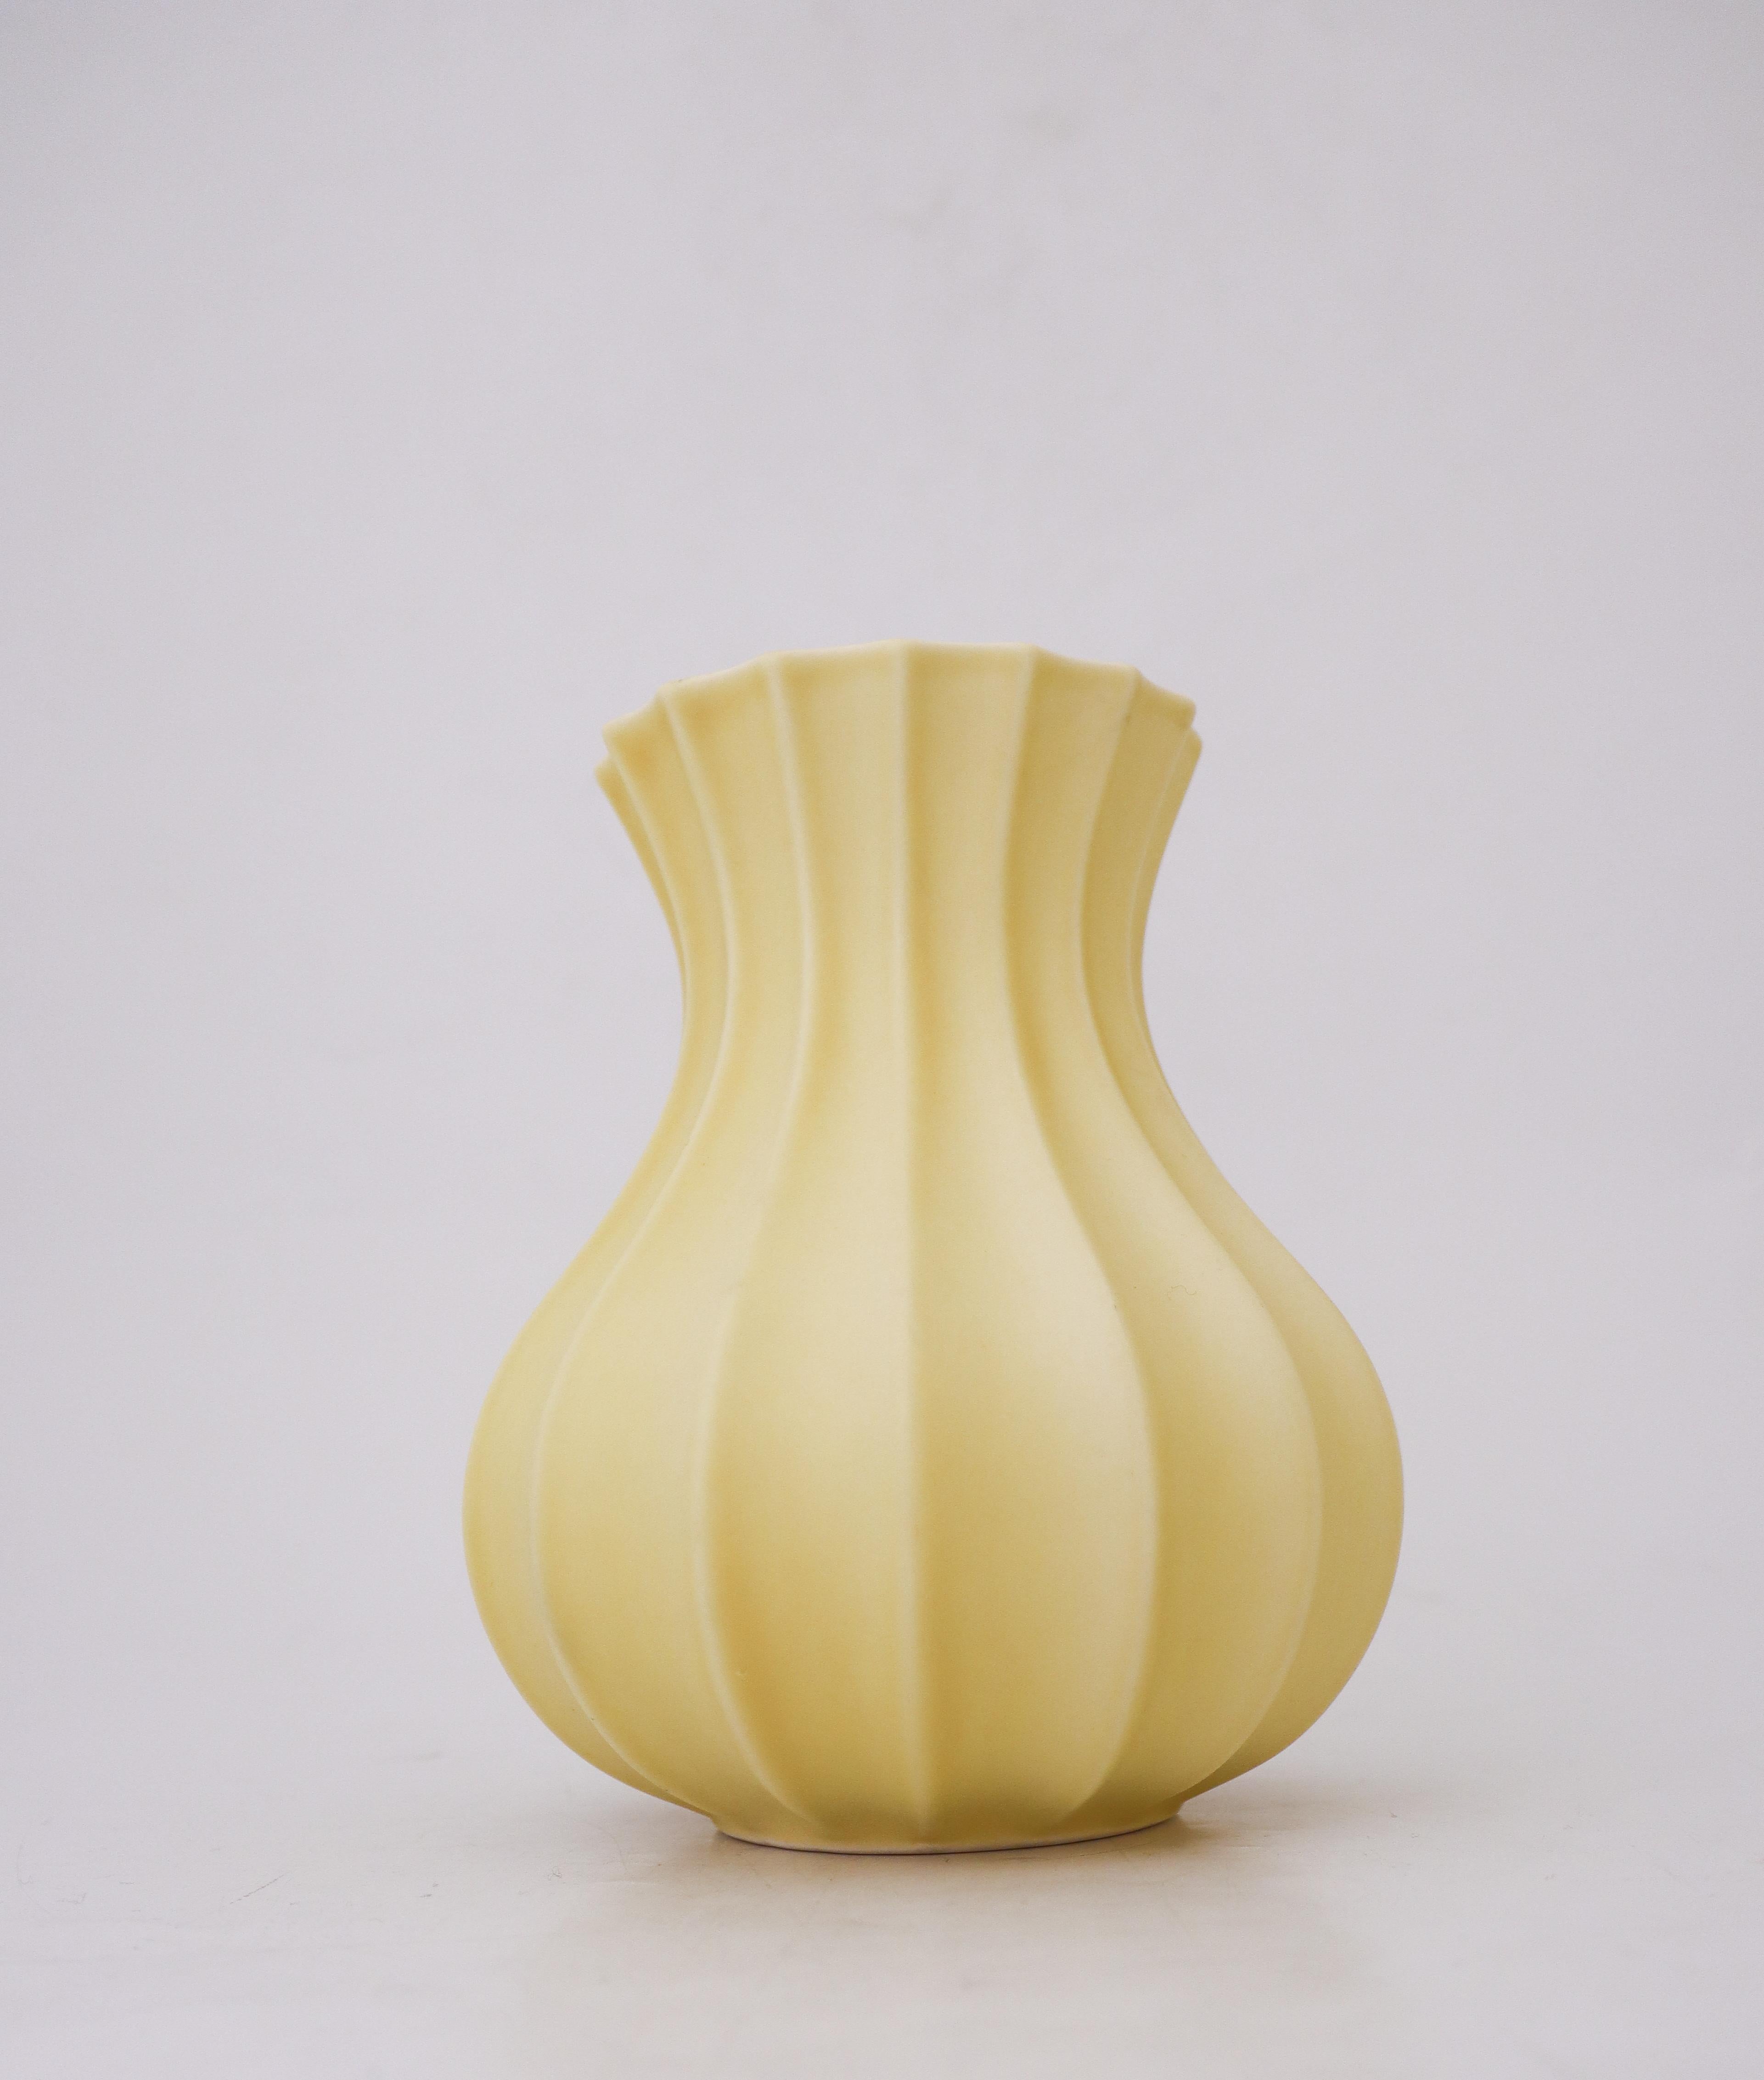 Eine schöne gelbe Vase, entworfen von Pia Rönndahl bei Rörstrand in den 1980er Jahren. Die Vase ist 17,5 cm hoch und bis auf einige kleine Flecken in ausgezeichnetem Zustand. Es ist wie auf dem Foto markiert und ist 2. Qualität. 

